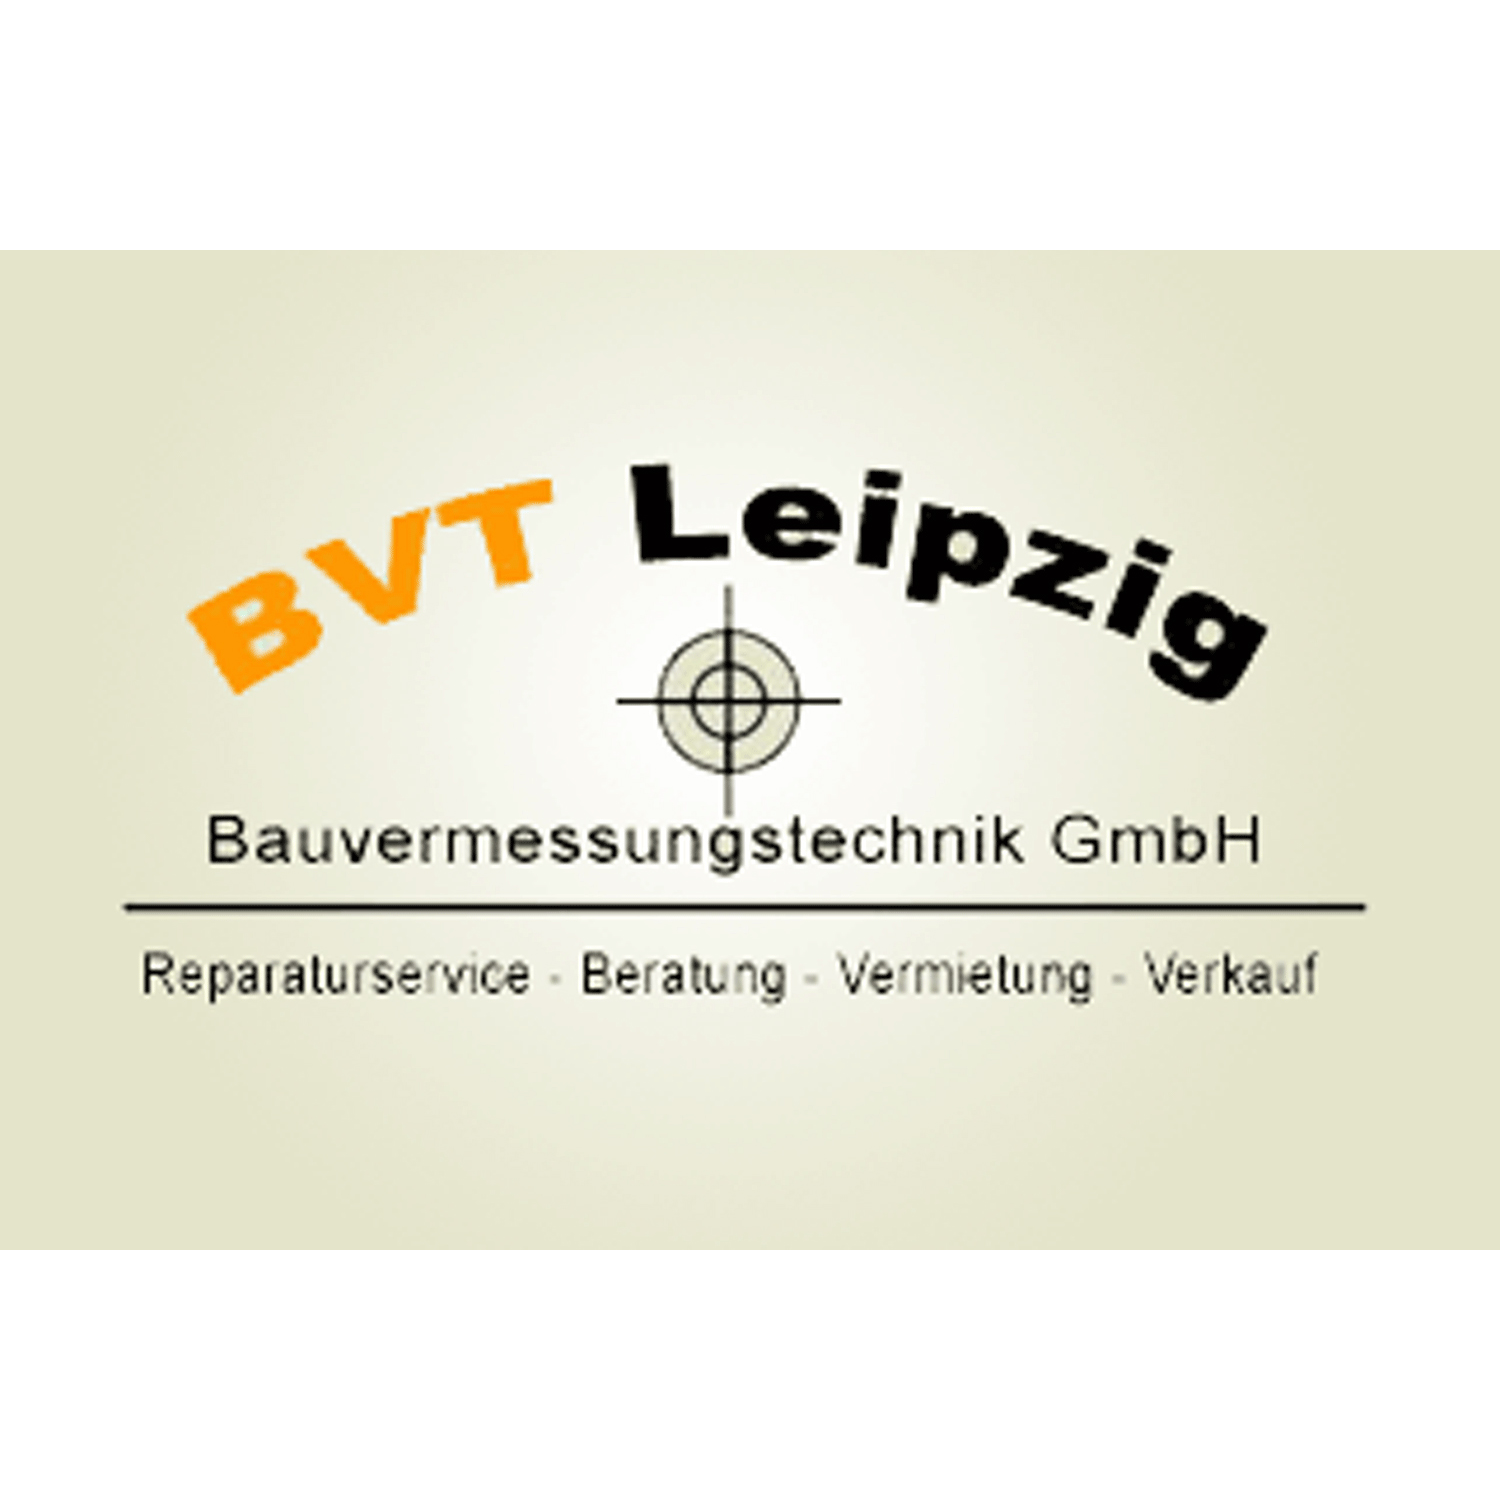 BVT Leipzig Bauvermessungstechnik GmbH in Leipzig - Logo